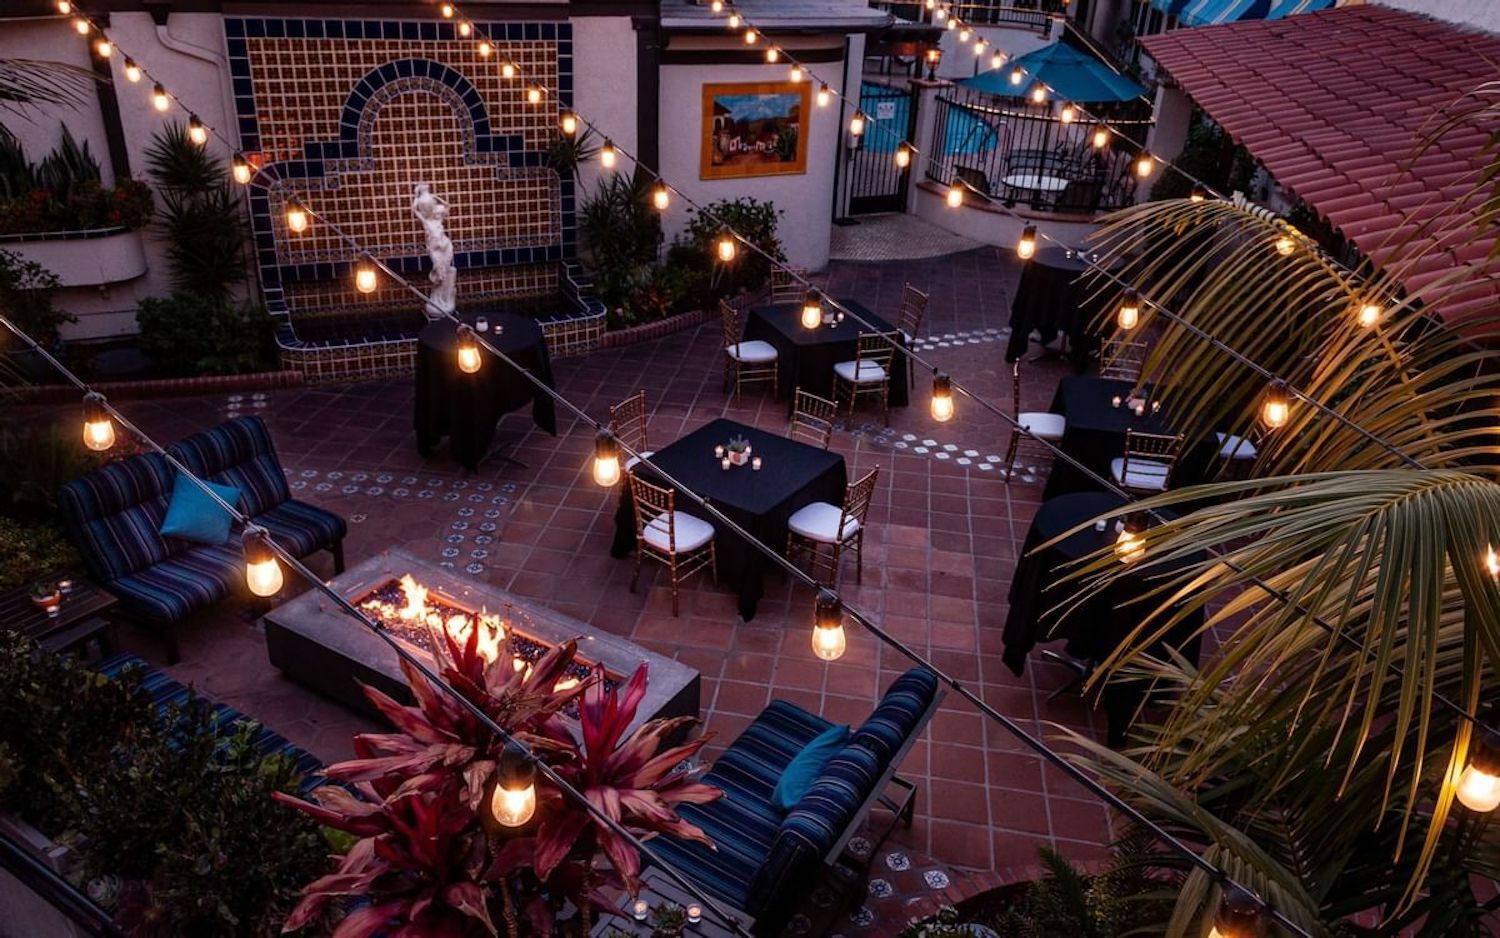 Photo of El Cordova Hotel, Coronado, CA